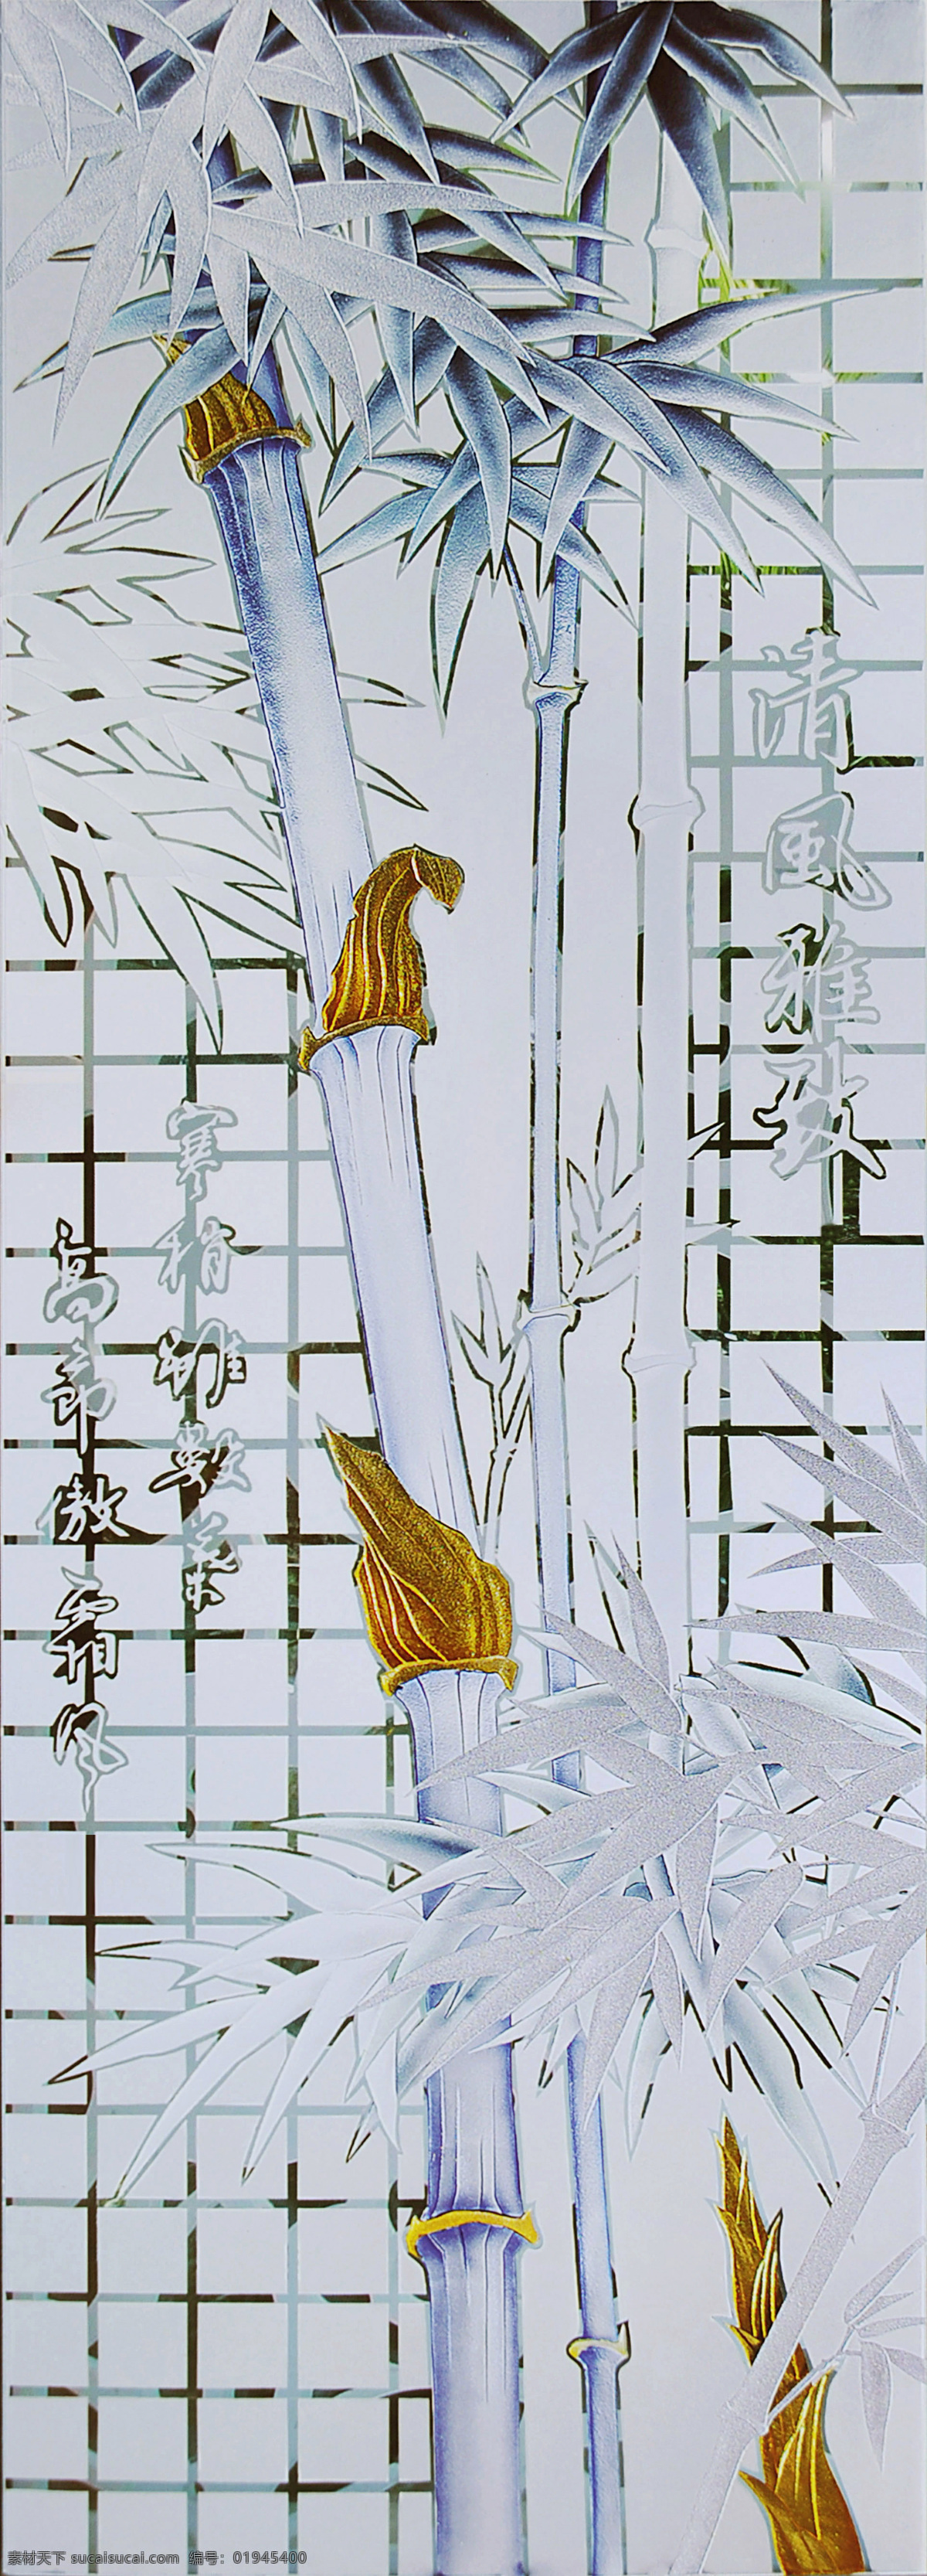 方格 竹艺 术 玻璃 艺术玻璃 工艺玻璃 雕刻 贴金箔 彩绘玻璃 现代装饰 玄关装饰 中国风 中国元素 竹子 竹报平安 文化艺术 传统文化